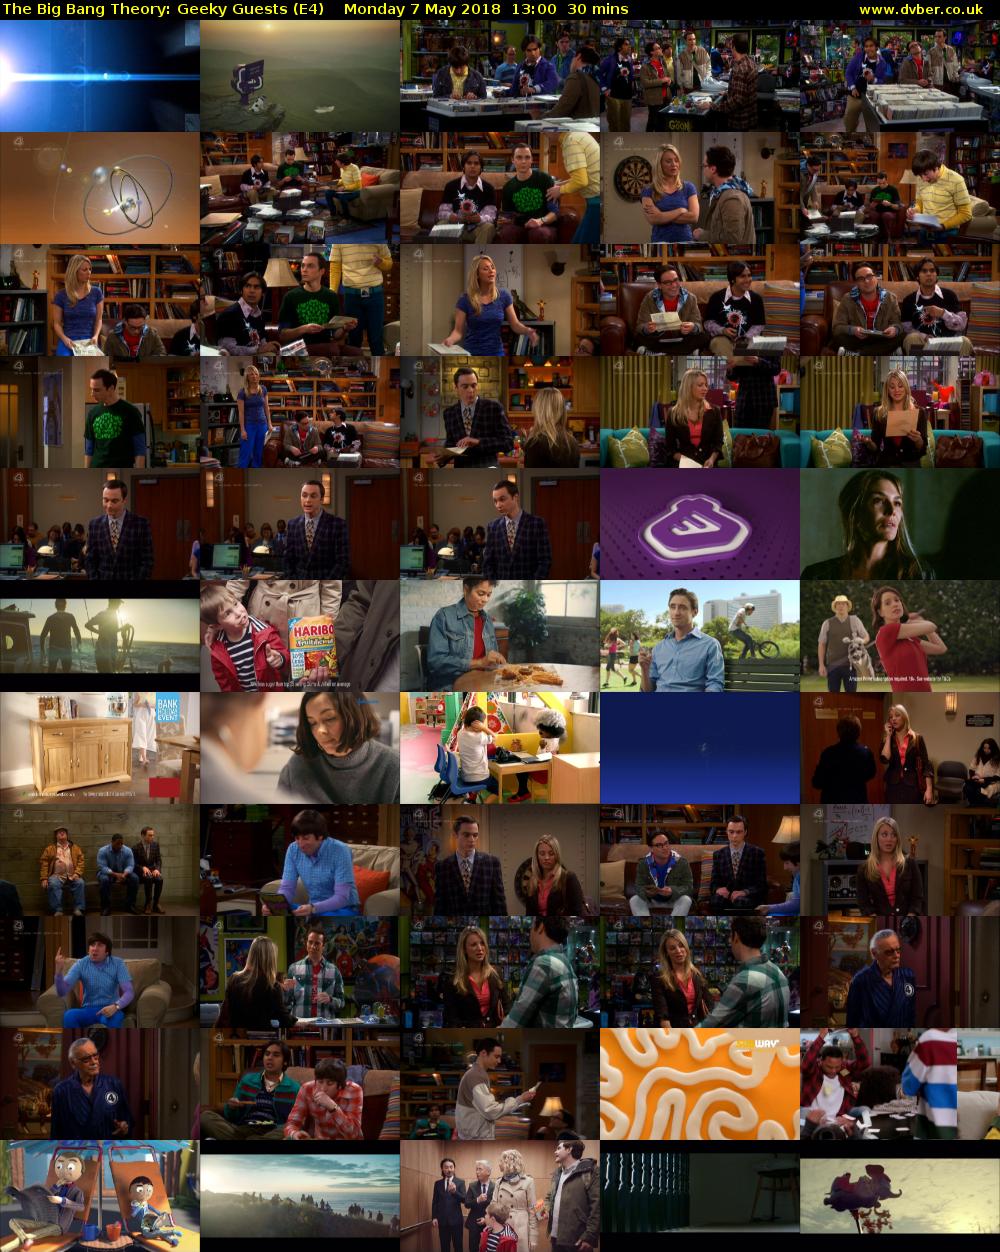 The Big Bang Theory: Geeky Guests (E4) Monday 7 May 2018 13:00 - 13:30